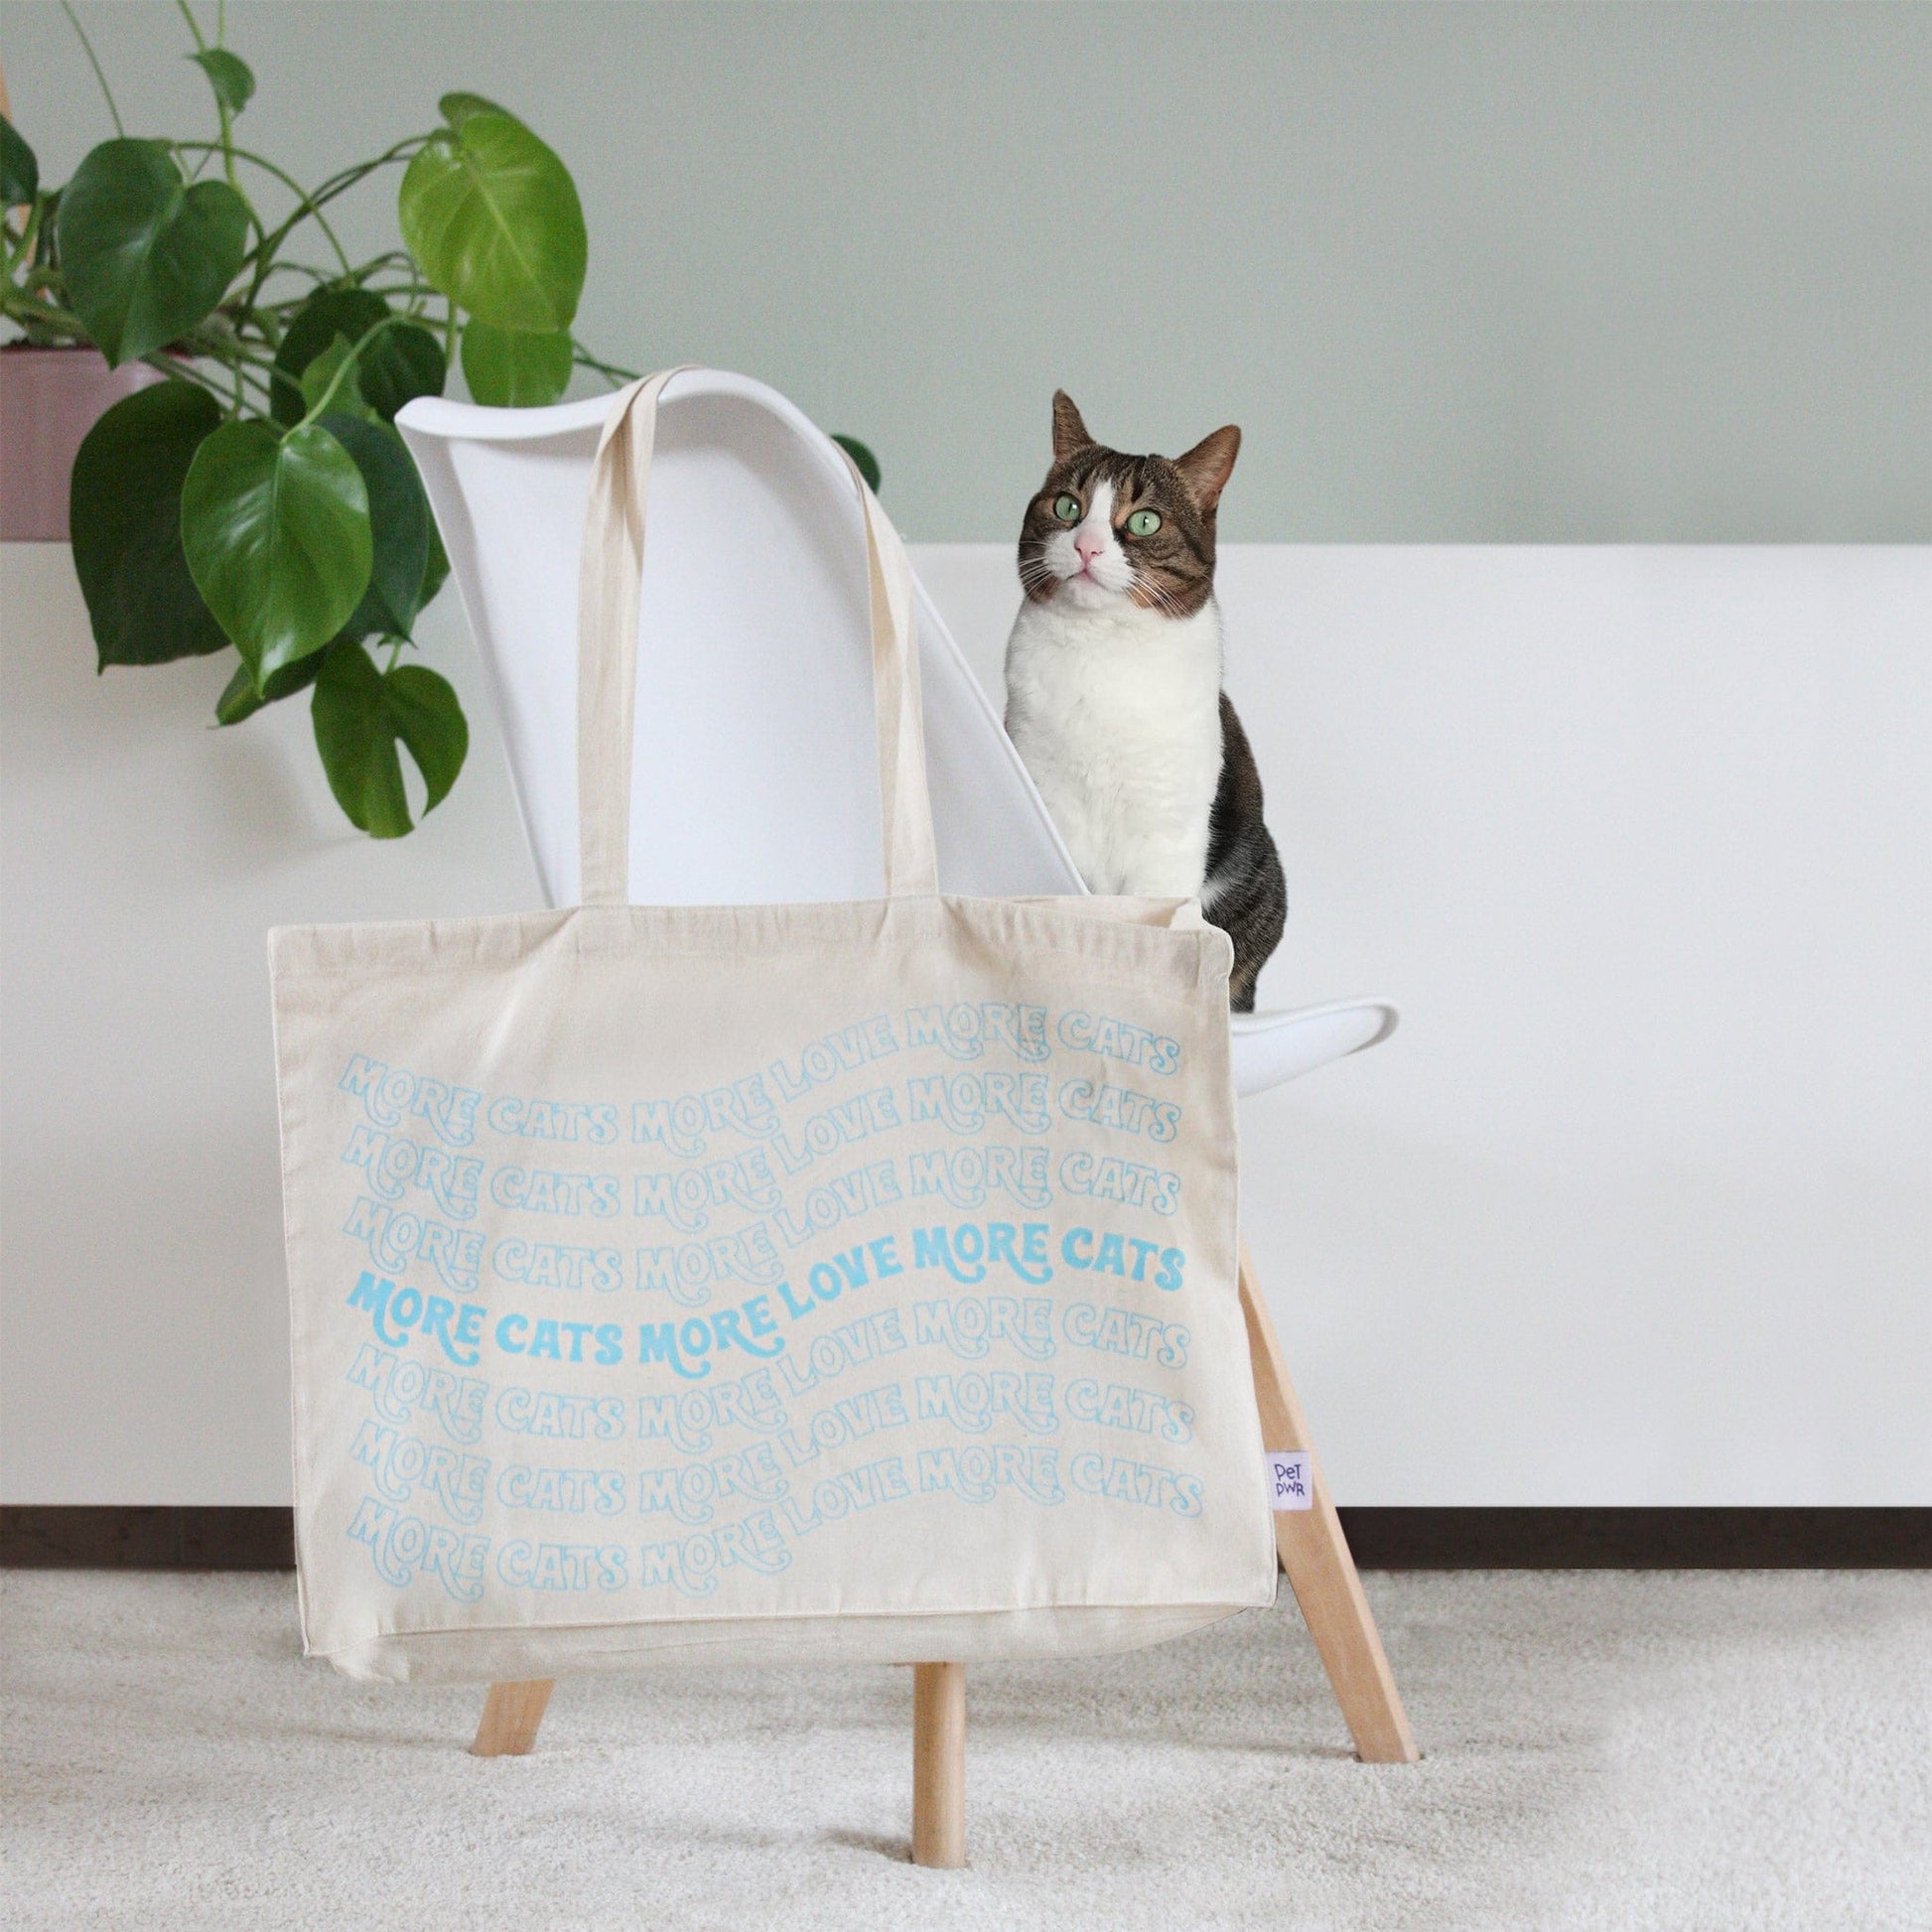 Maxi bag "More love more cats" 🐈 01